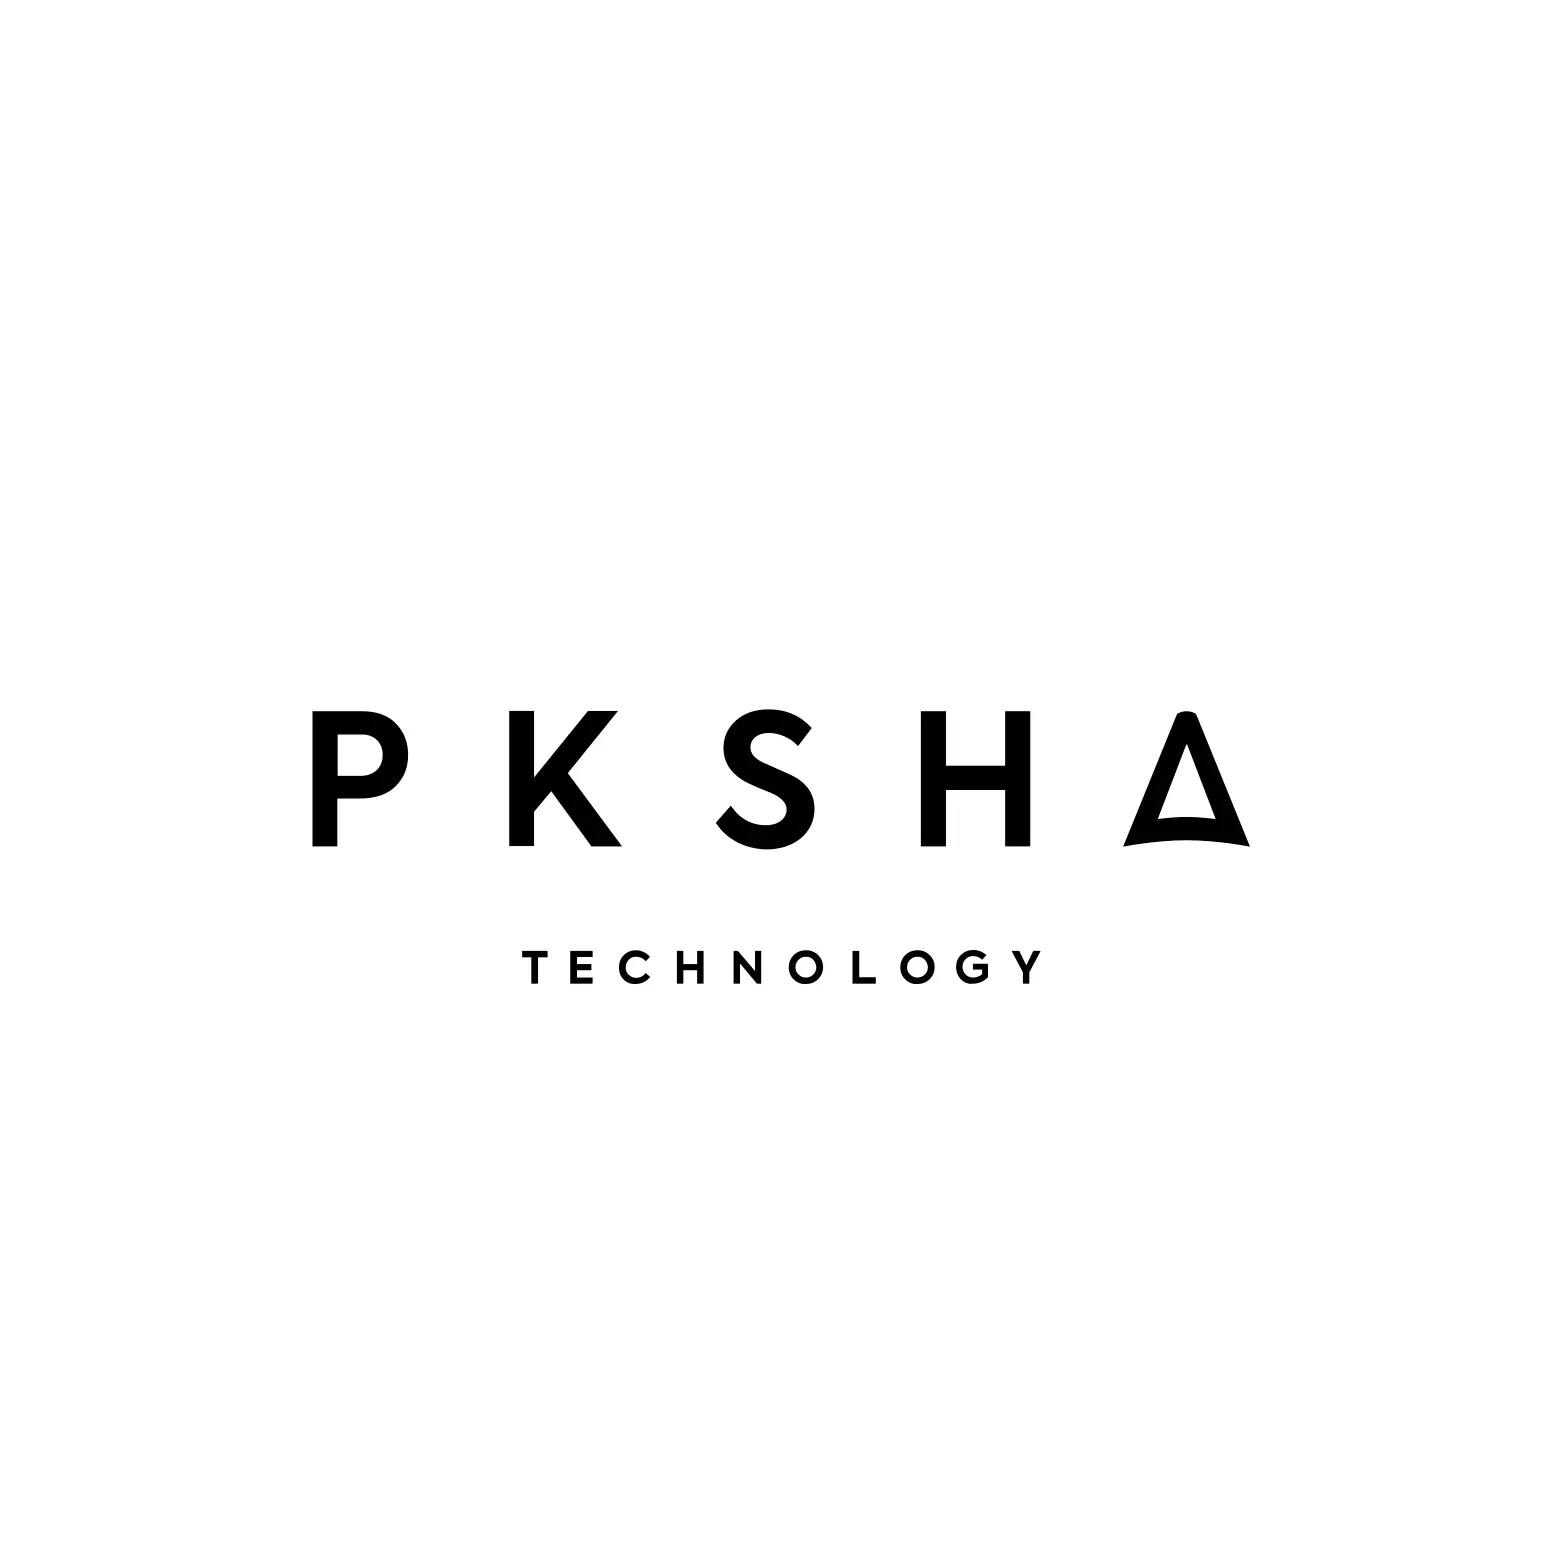 PKSHA